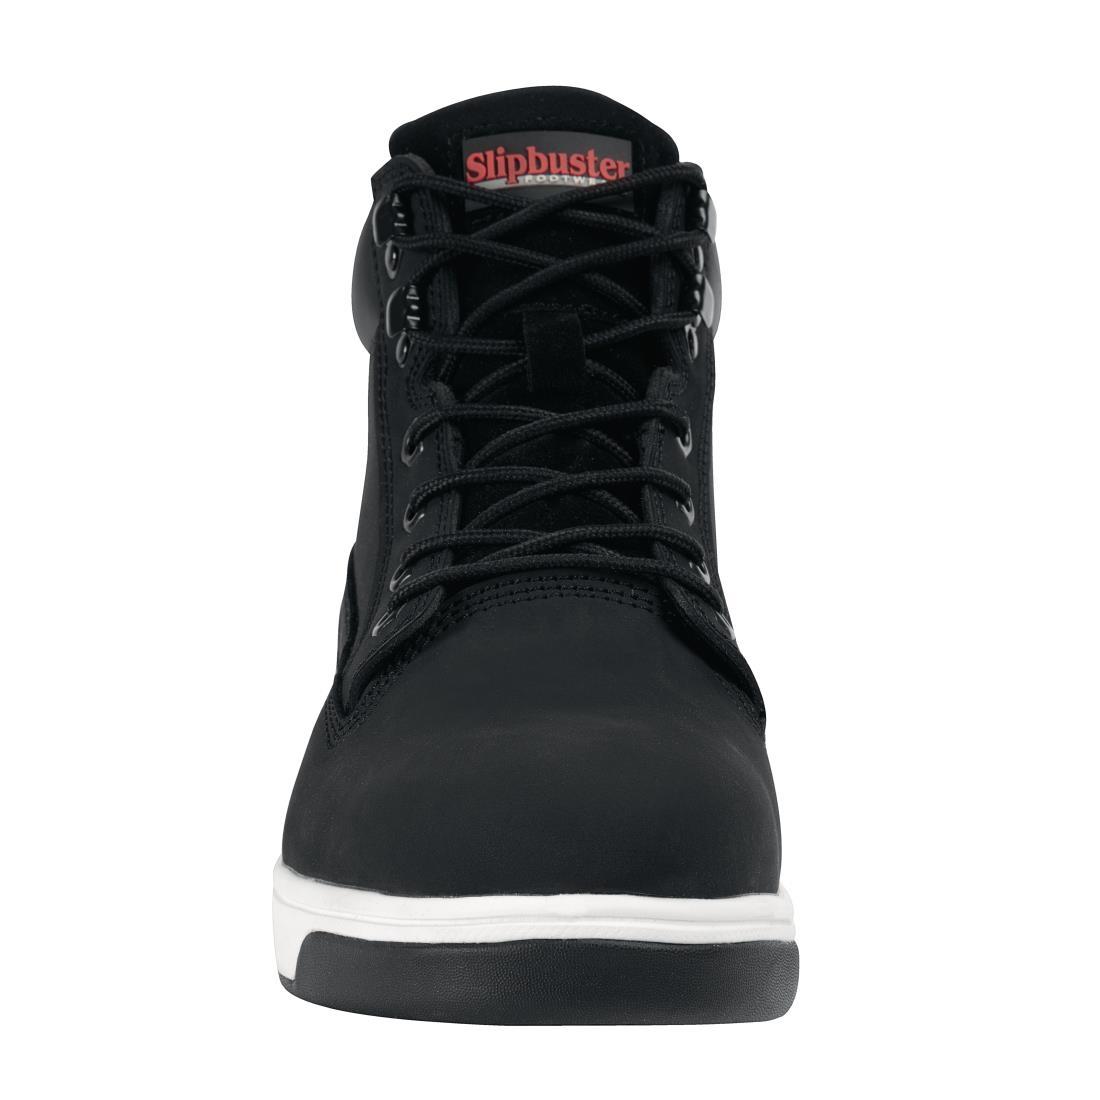 Slipbuster Sneaker Boots Black 42 - BB422-42  - 3